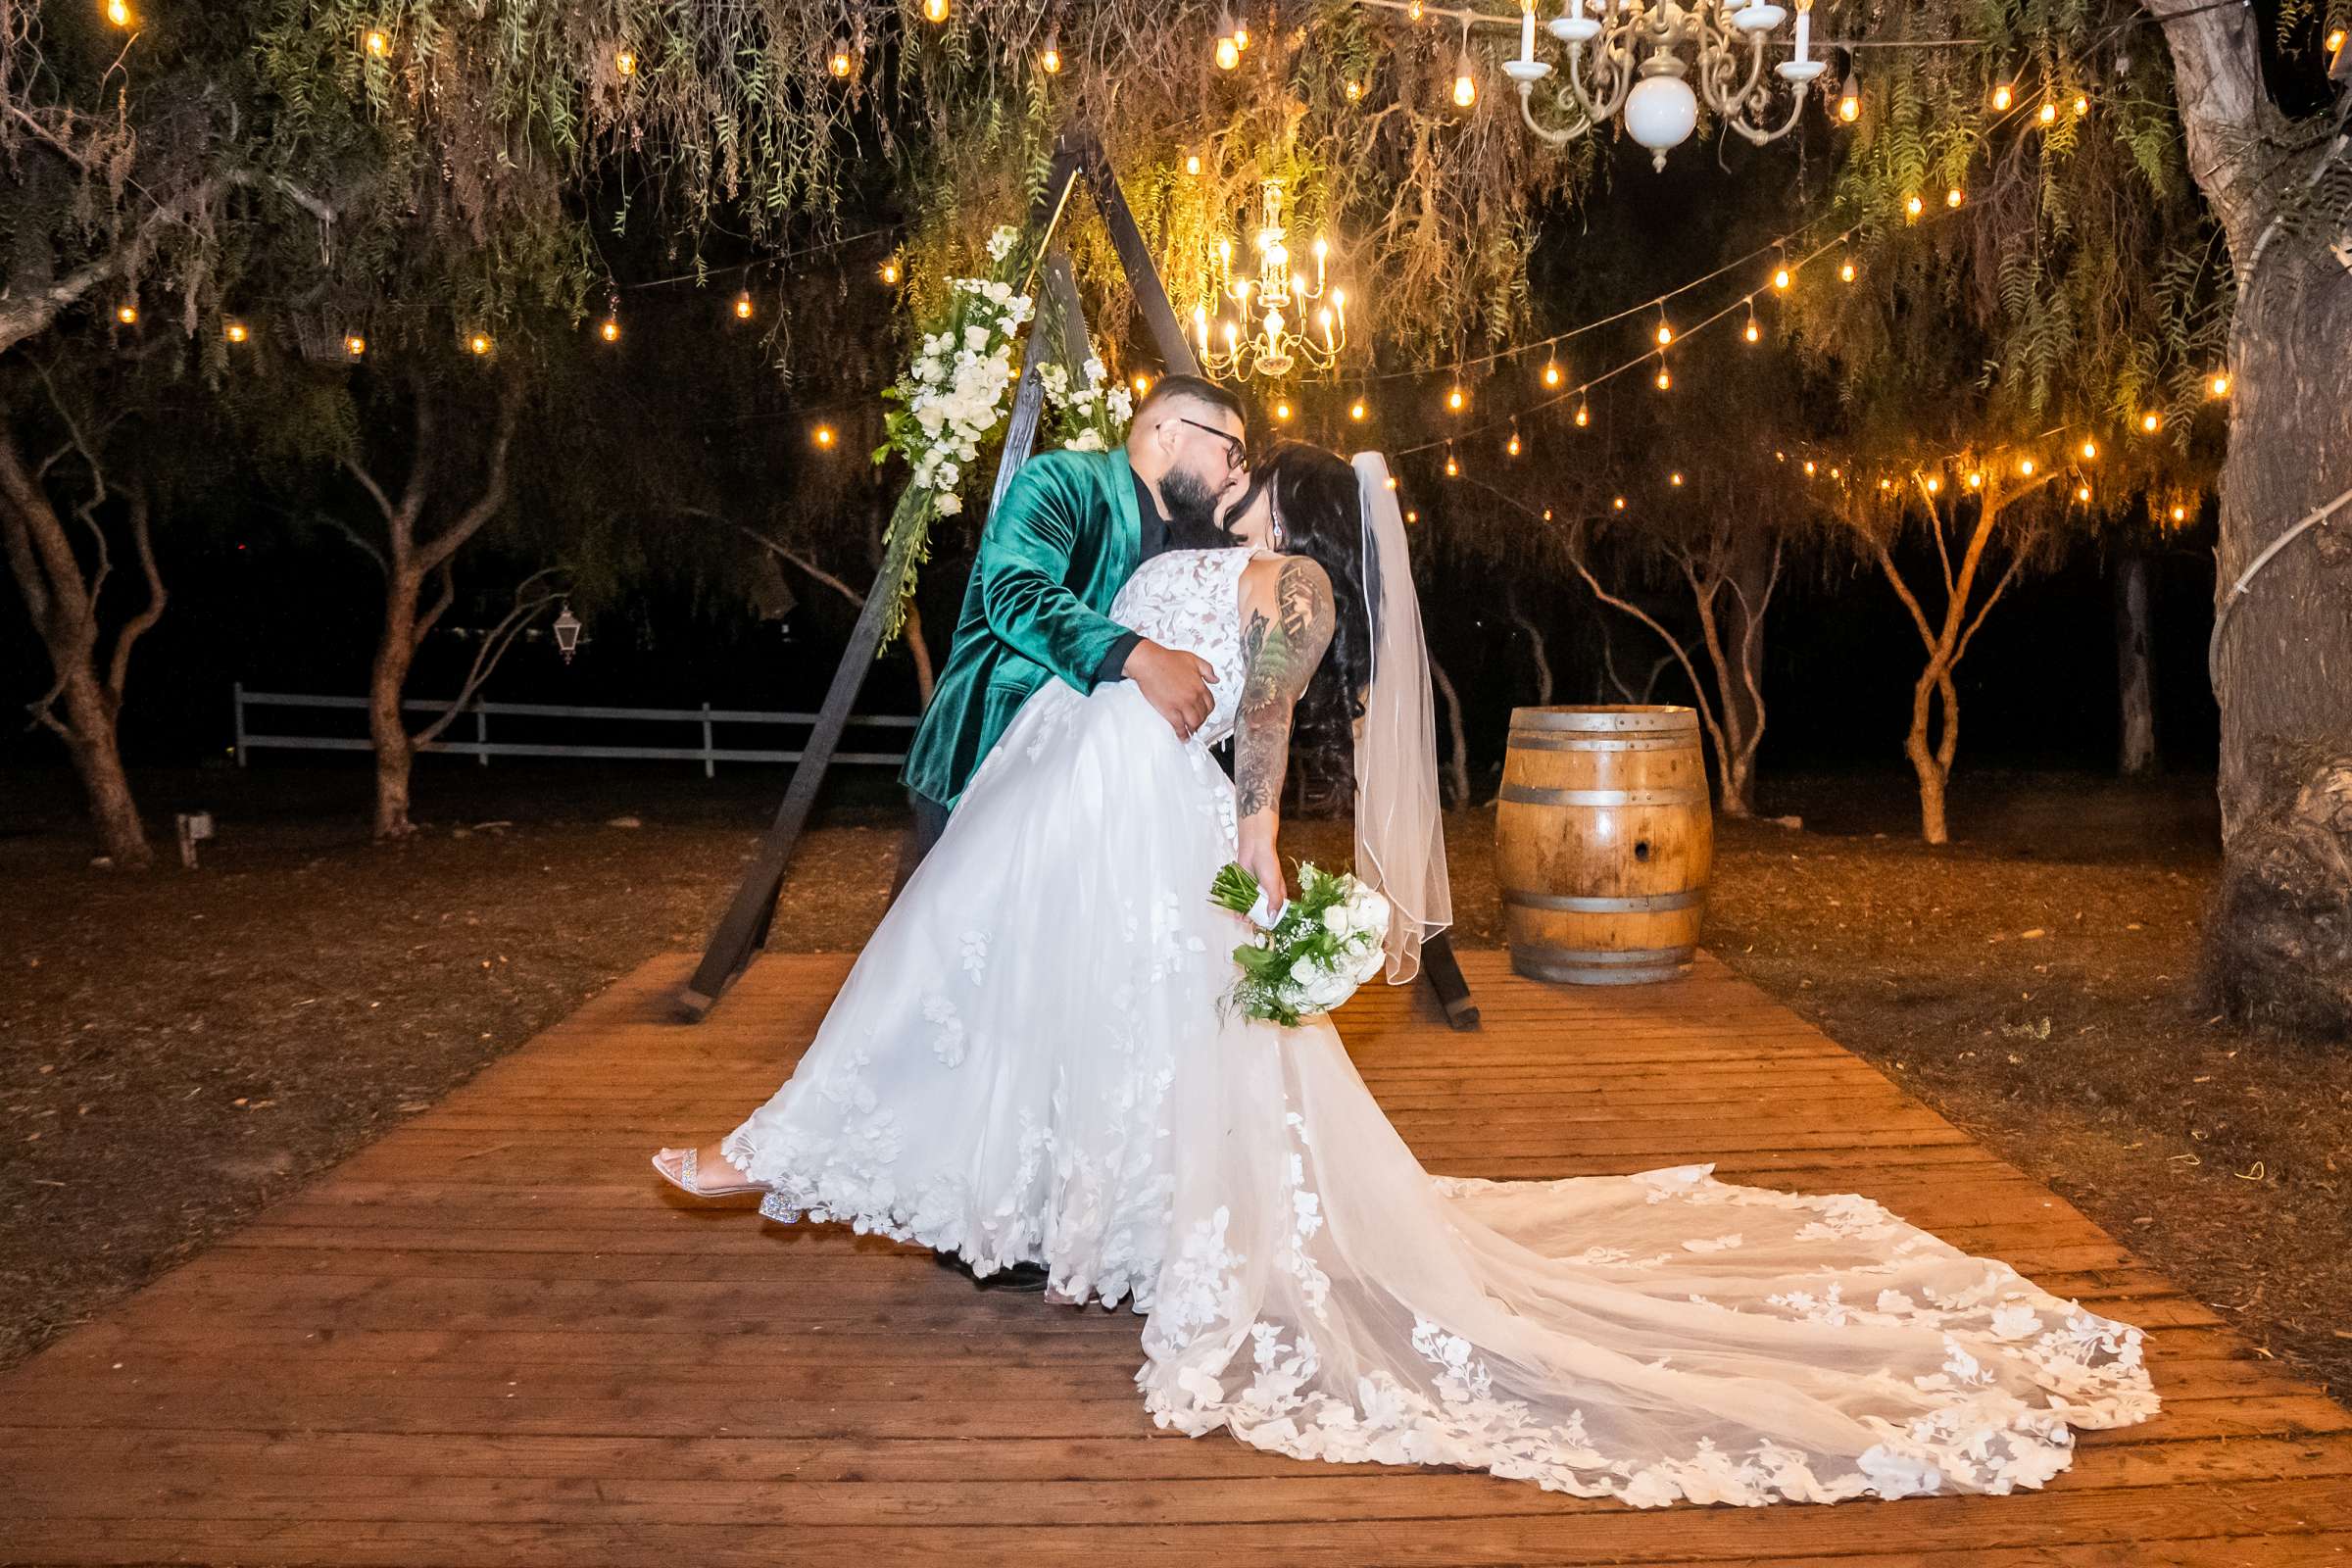 La Hacienda Wedding, Ashley and Alvaro Wedding Photo #14 by True Photography